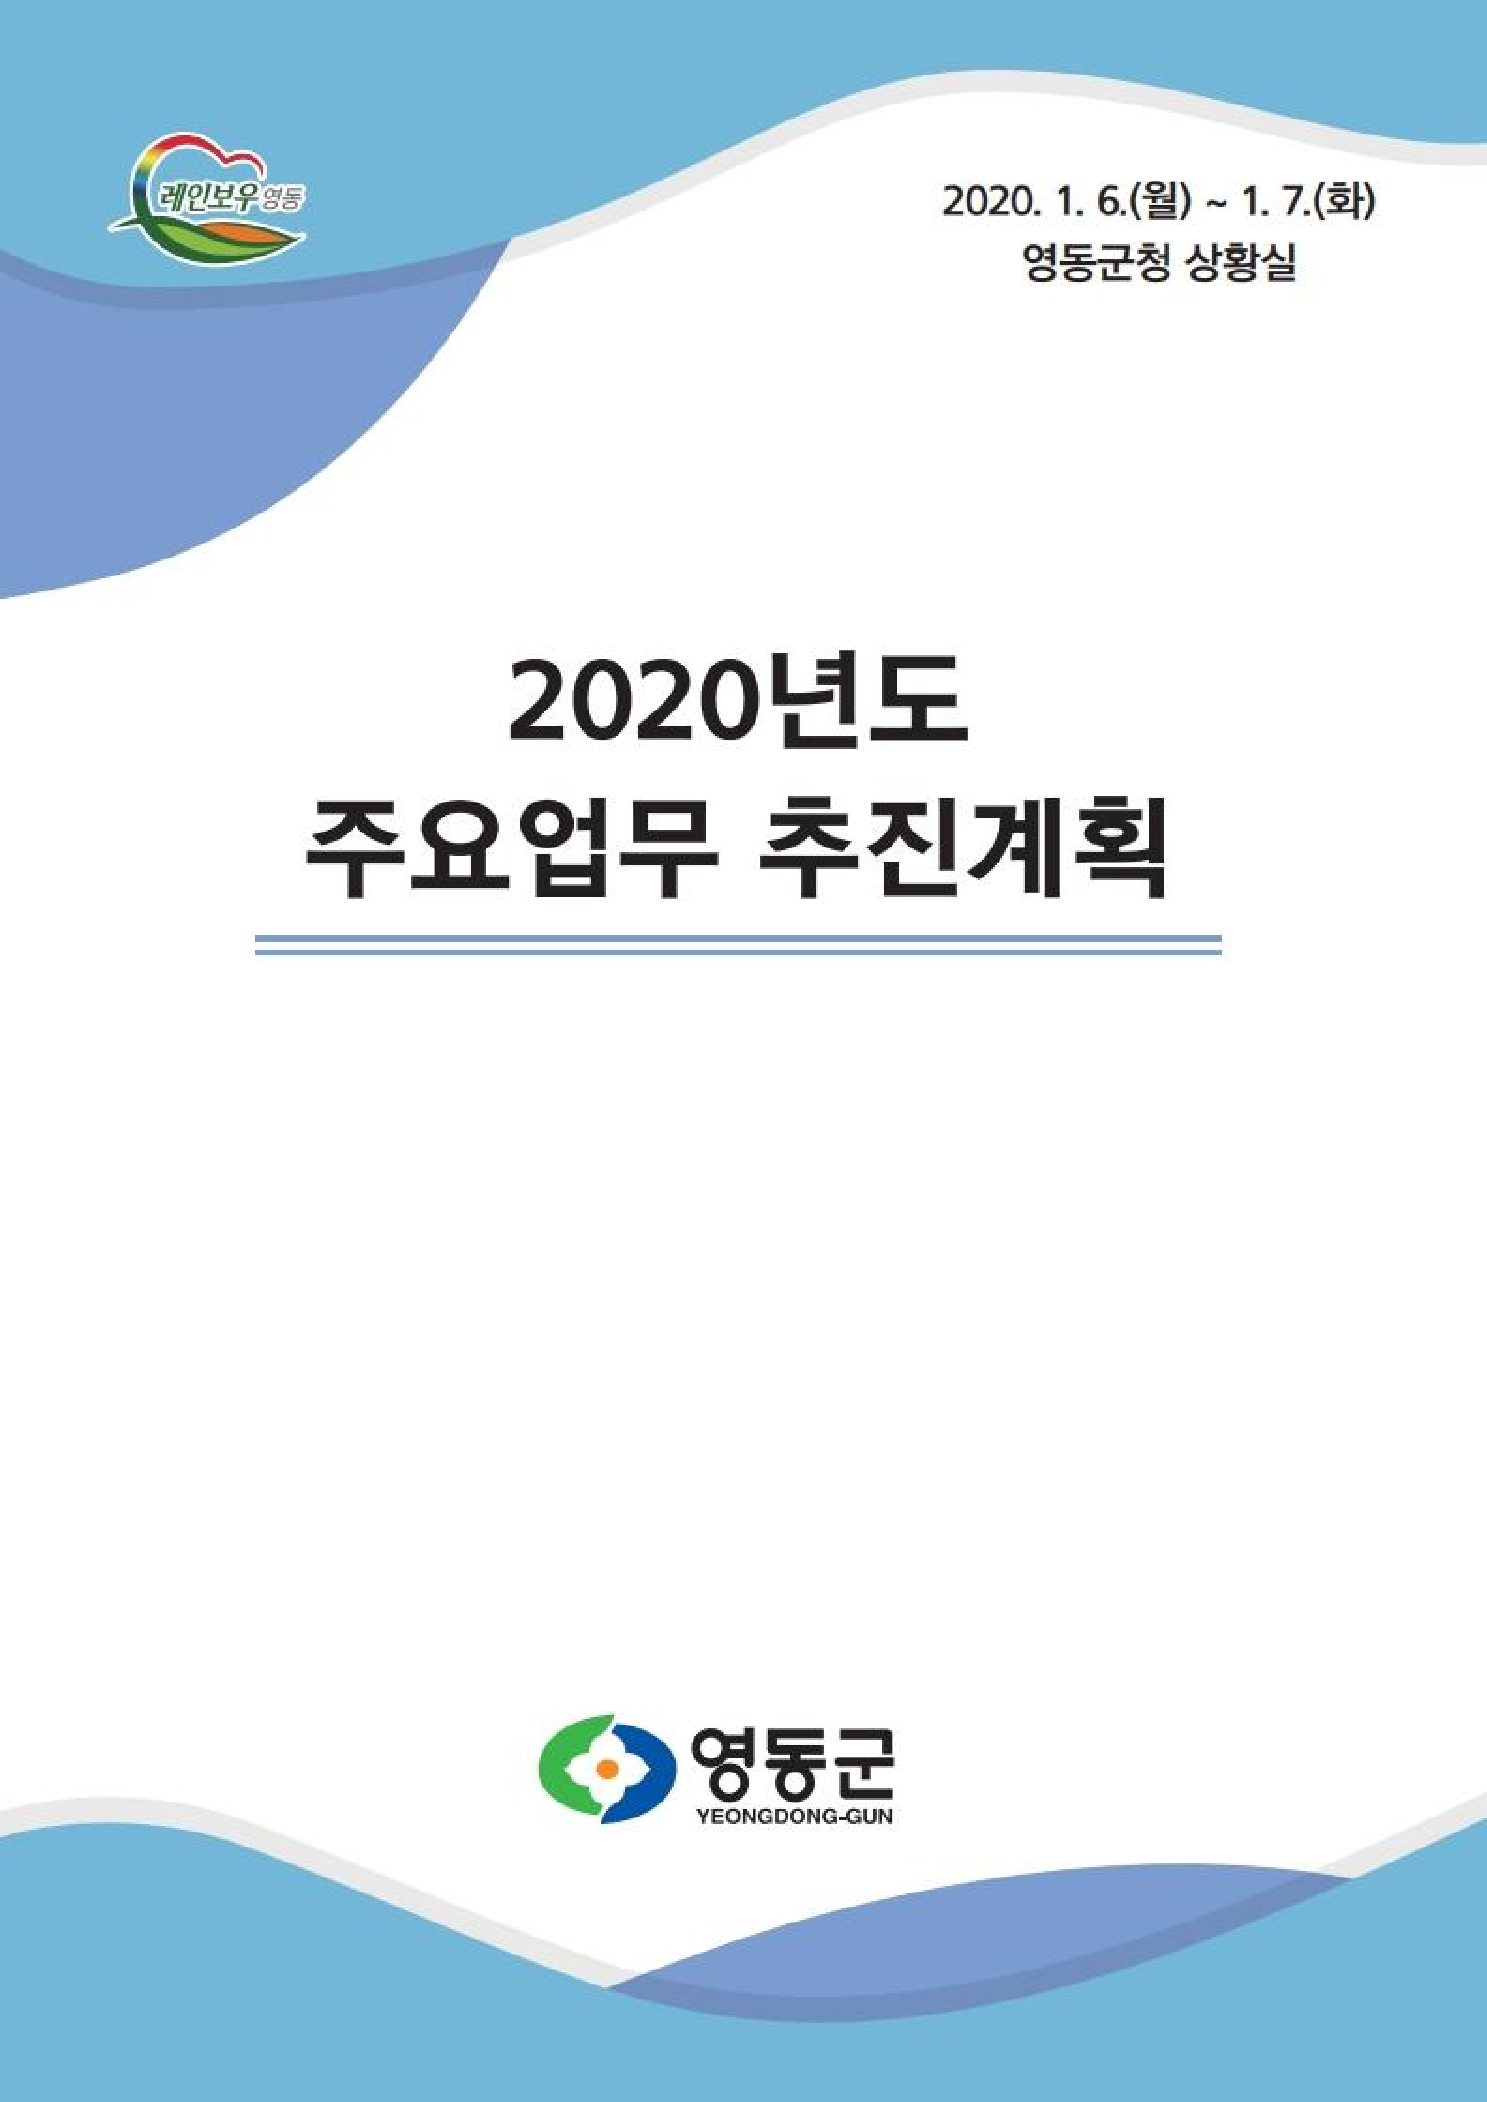 2020 주요업무 추진계획